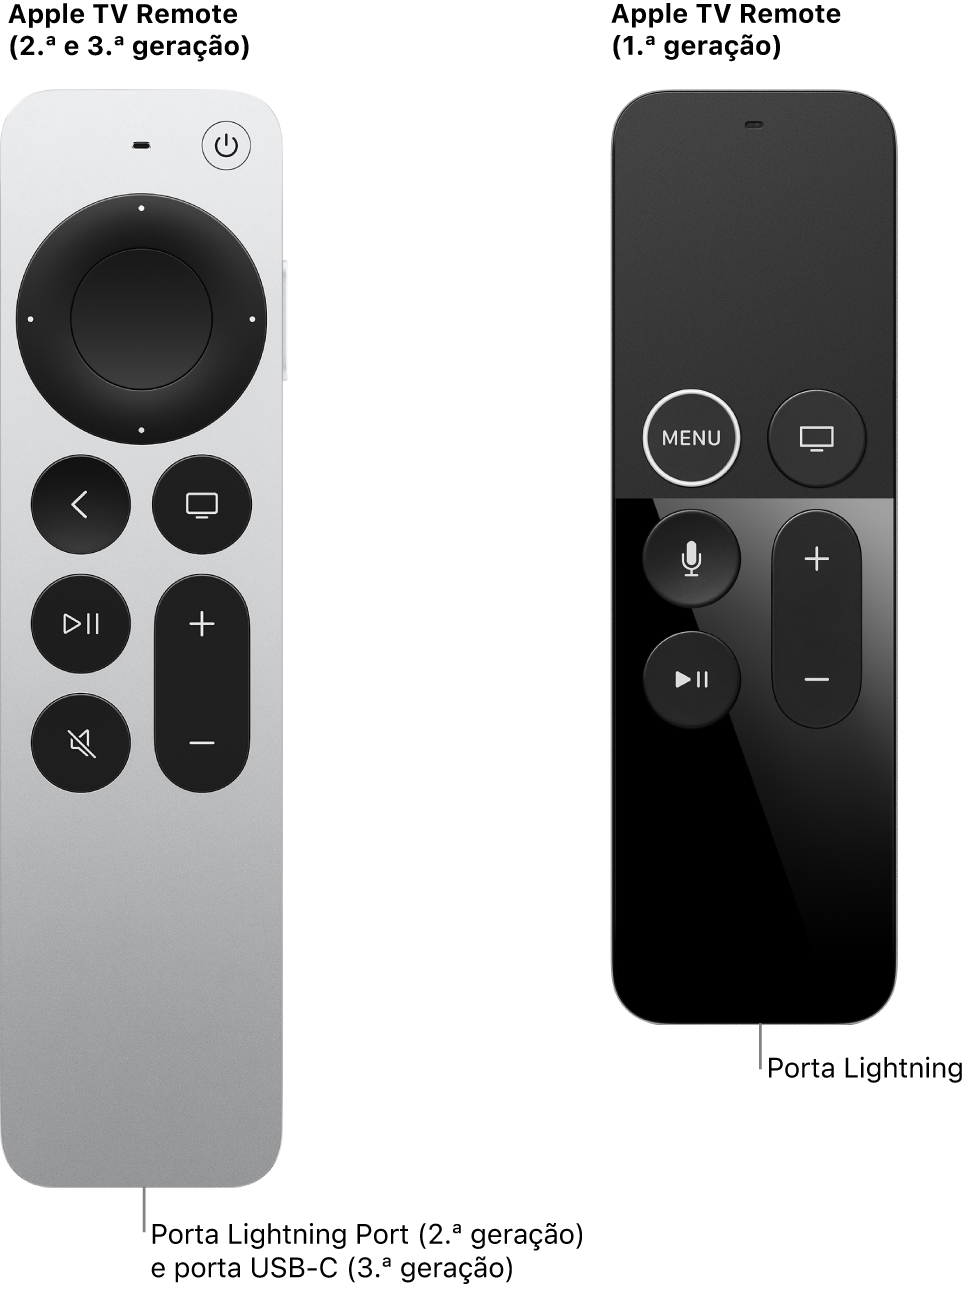 Imagem do Apple TV Remote (2.ª geração) e do Apple TV Remote (1.ª geração) a mostrar a porta Lightning